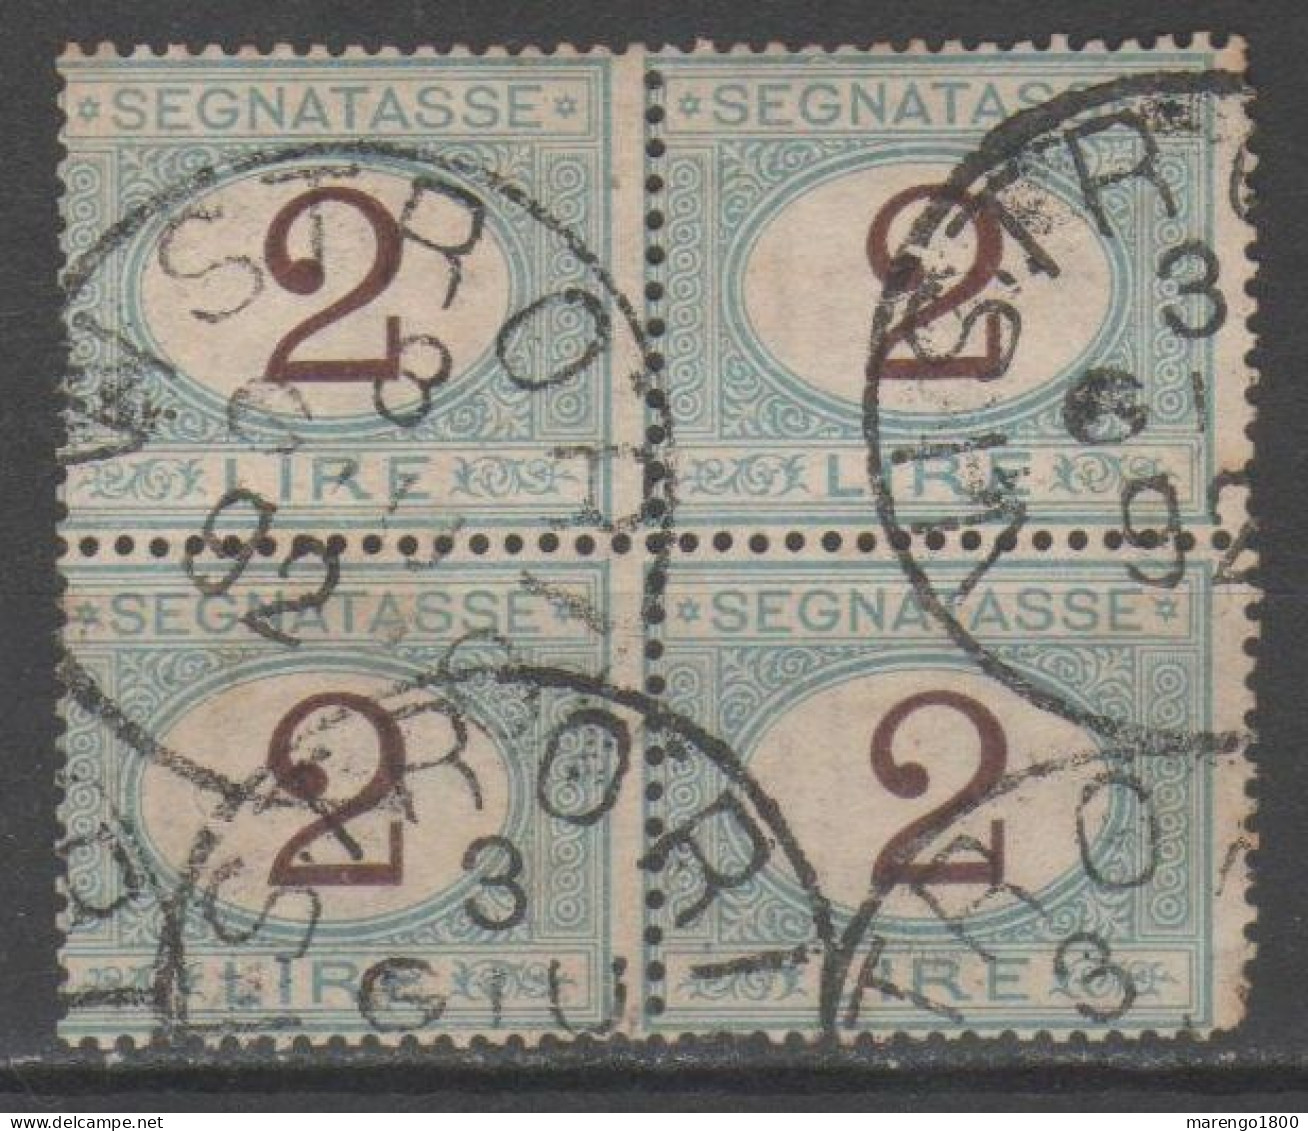 ITALIA 1870 - Segnatasse 2 L. Quartina          (g9392) - Impuestos